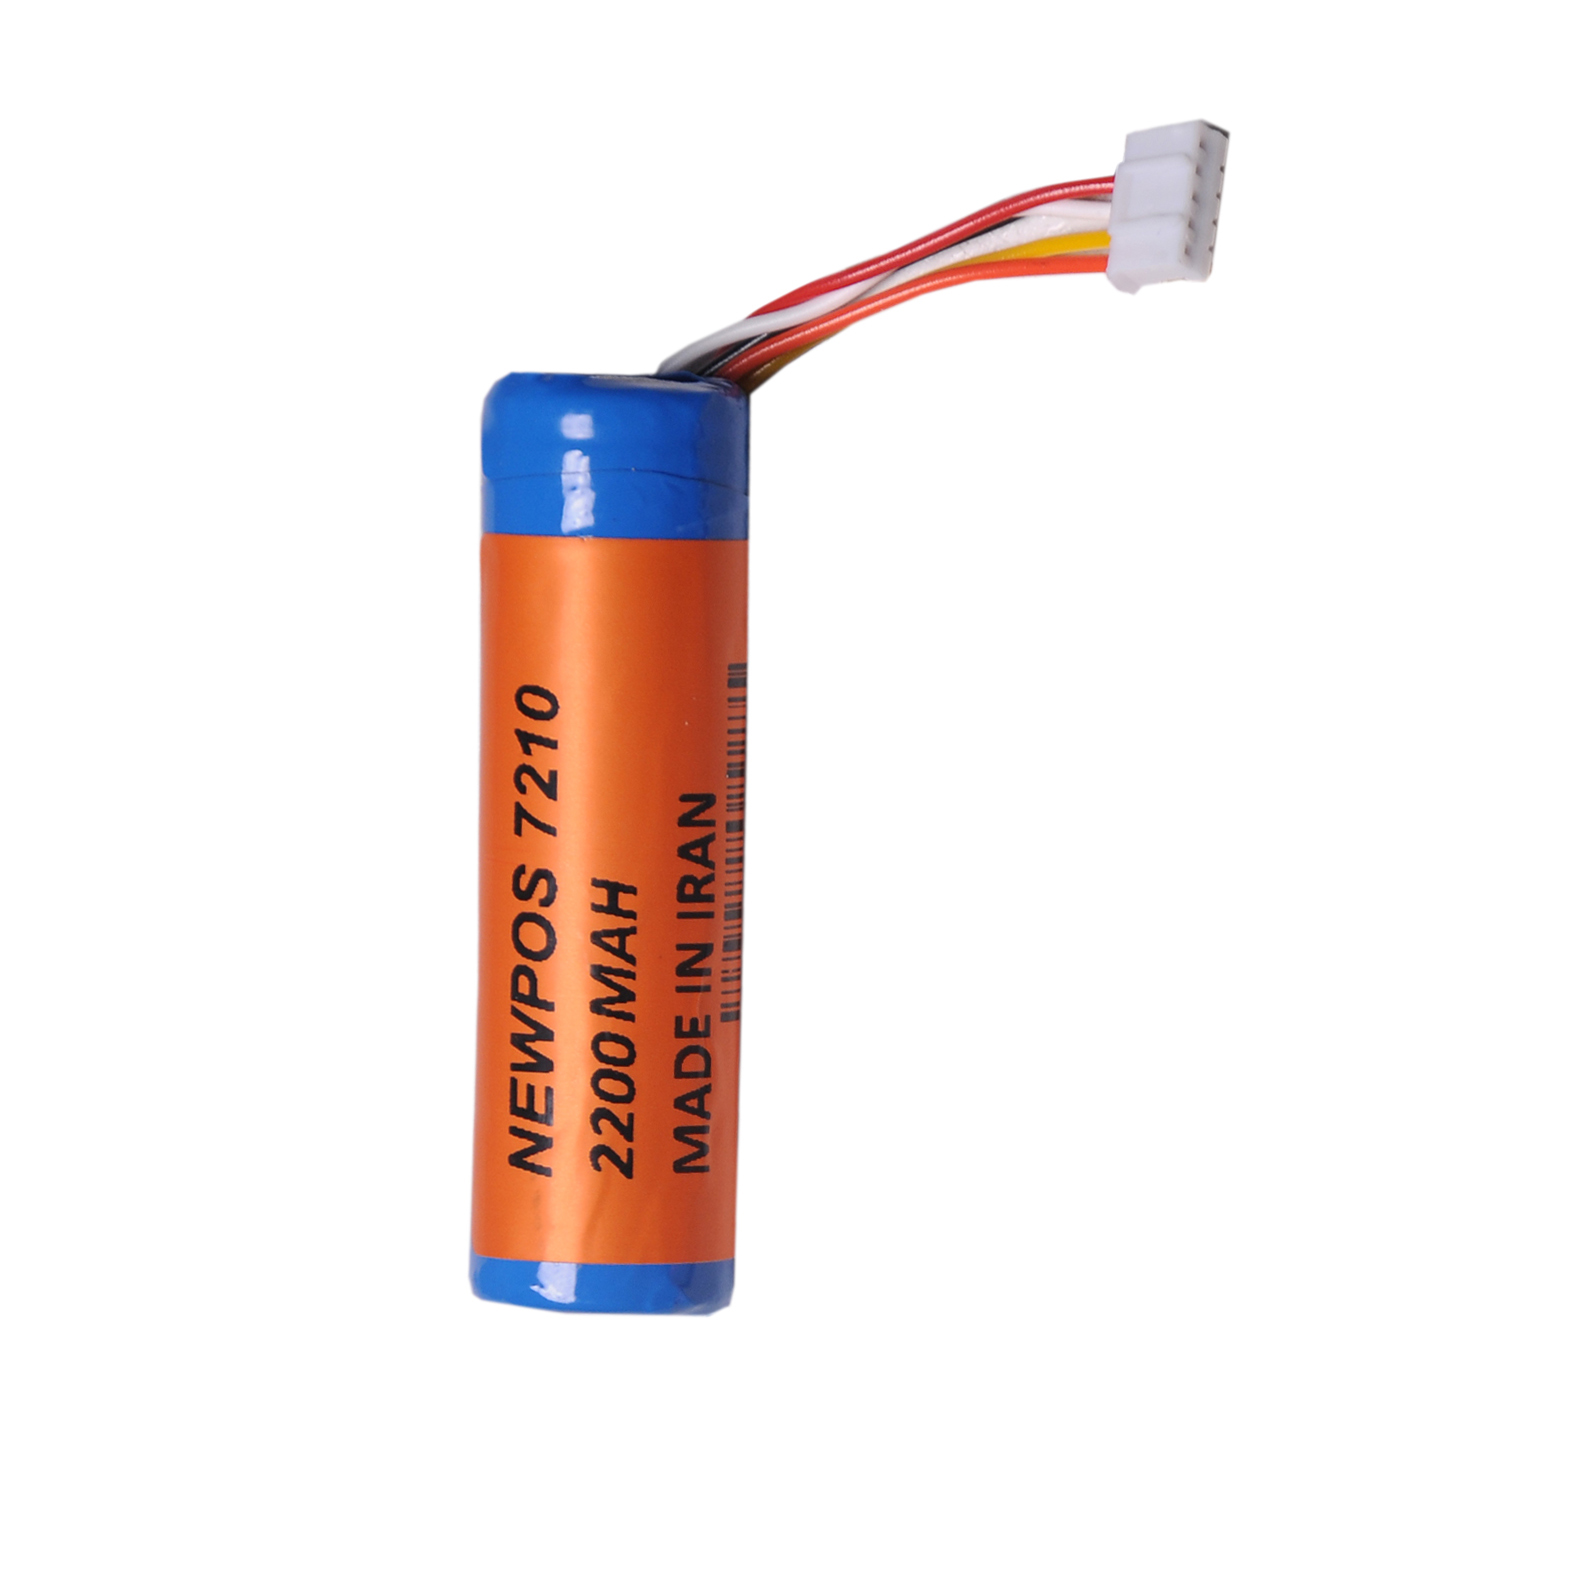 باتری لیتیوم یون کد np 7210 ظرفیت 2200 میلی آمپر ساعت مناسب برای دستگاه کارتخوان نیوپوز 7210